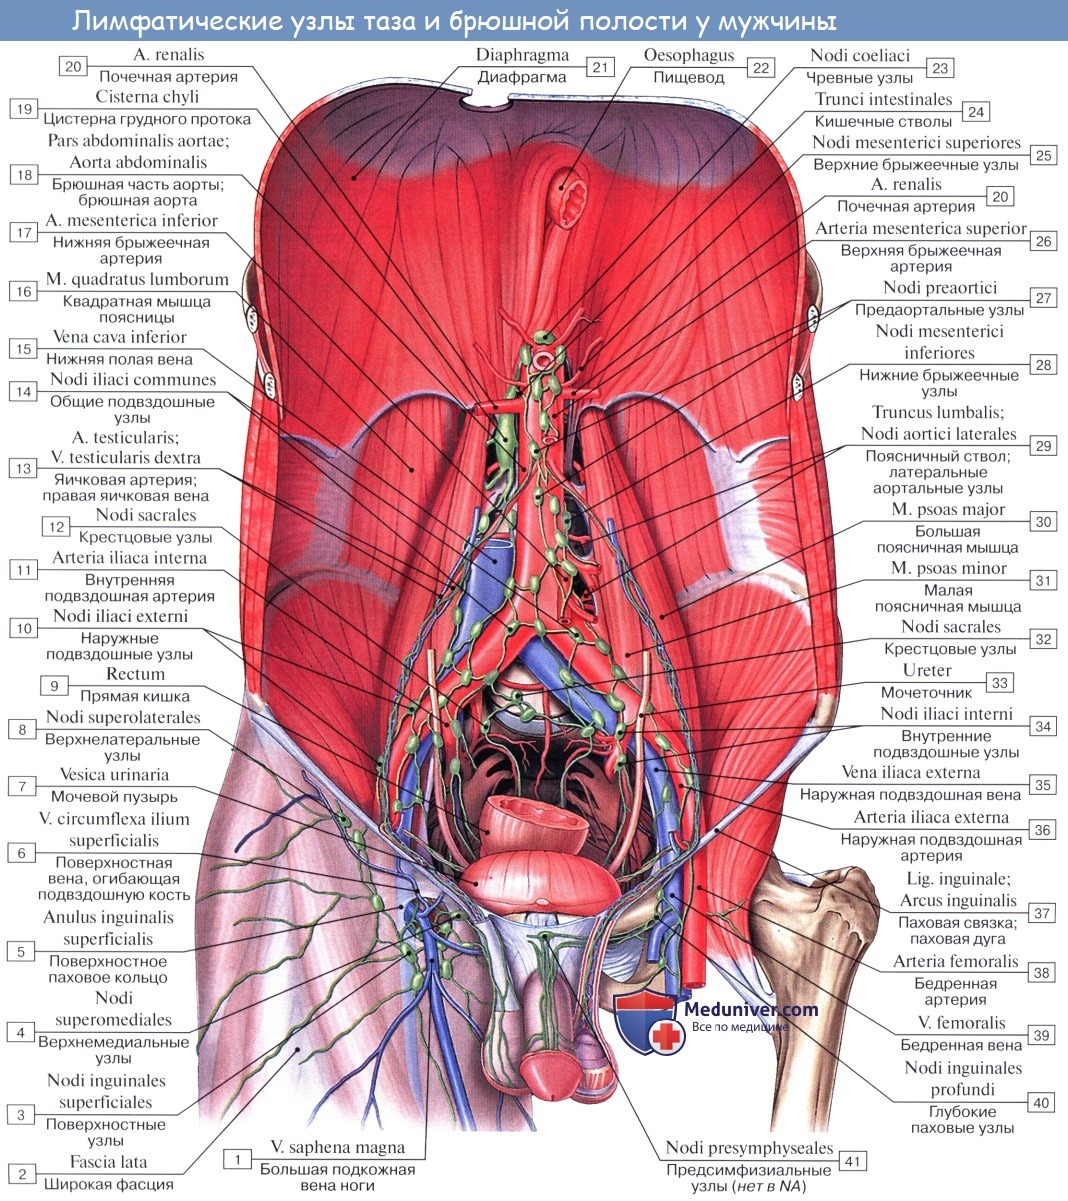 Анатомия: Сосуды (кровоснабжение), нервы (иннервация), лимфатический отток от мочеиспускательного канала. Акт мочеиспускания